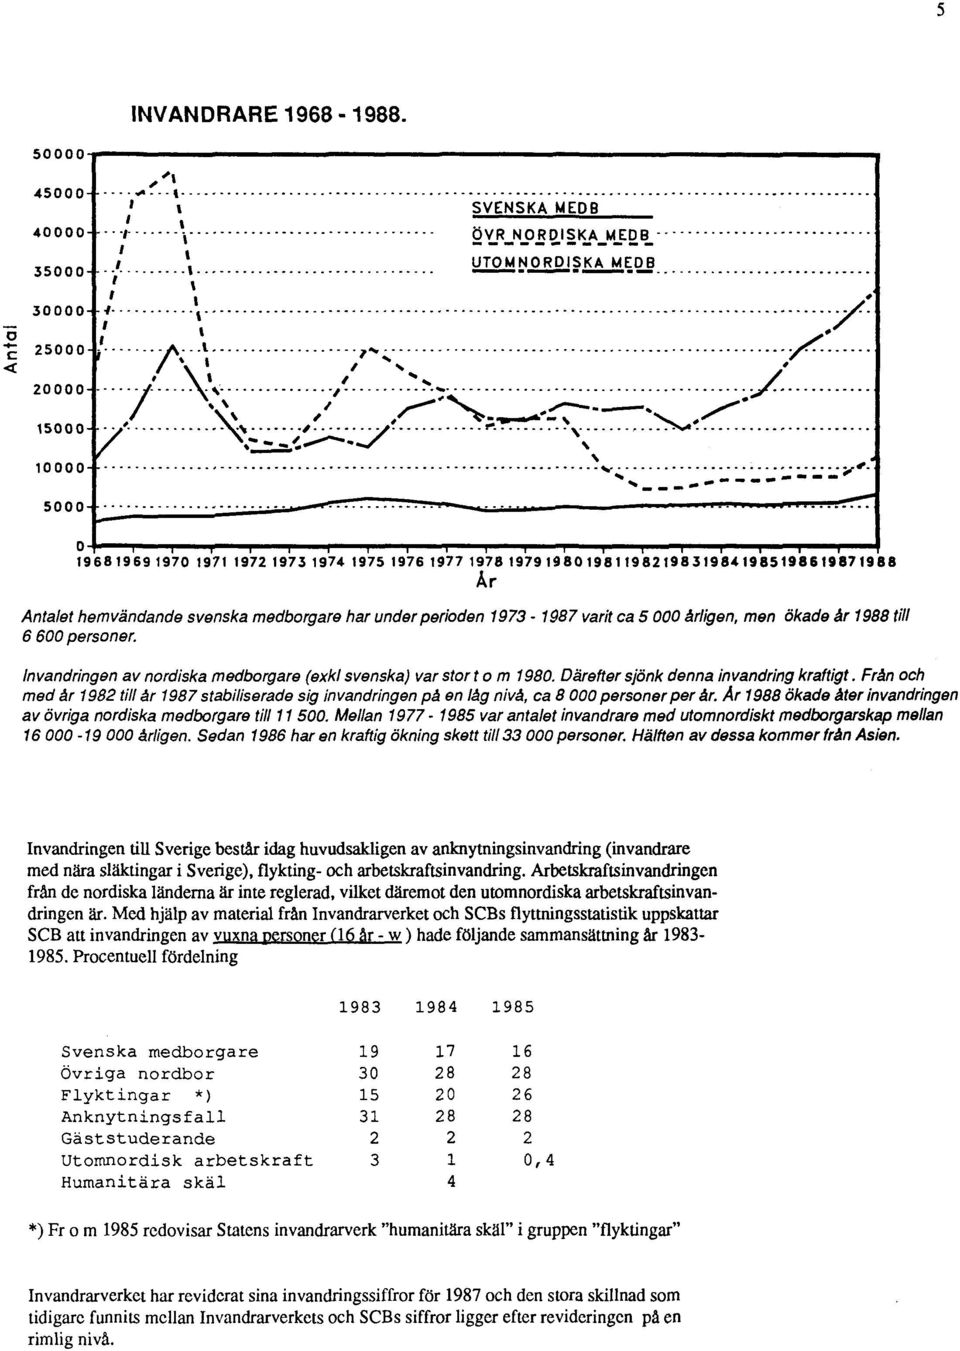 Från och med år 1982 till år 1987 stabiliserade sig invandringen på en låg nivå, ca 8 000 personer per år. Ar 1988 ökade åter invandringen av övriga nordiska medborgare till 11 500.